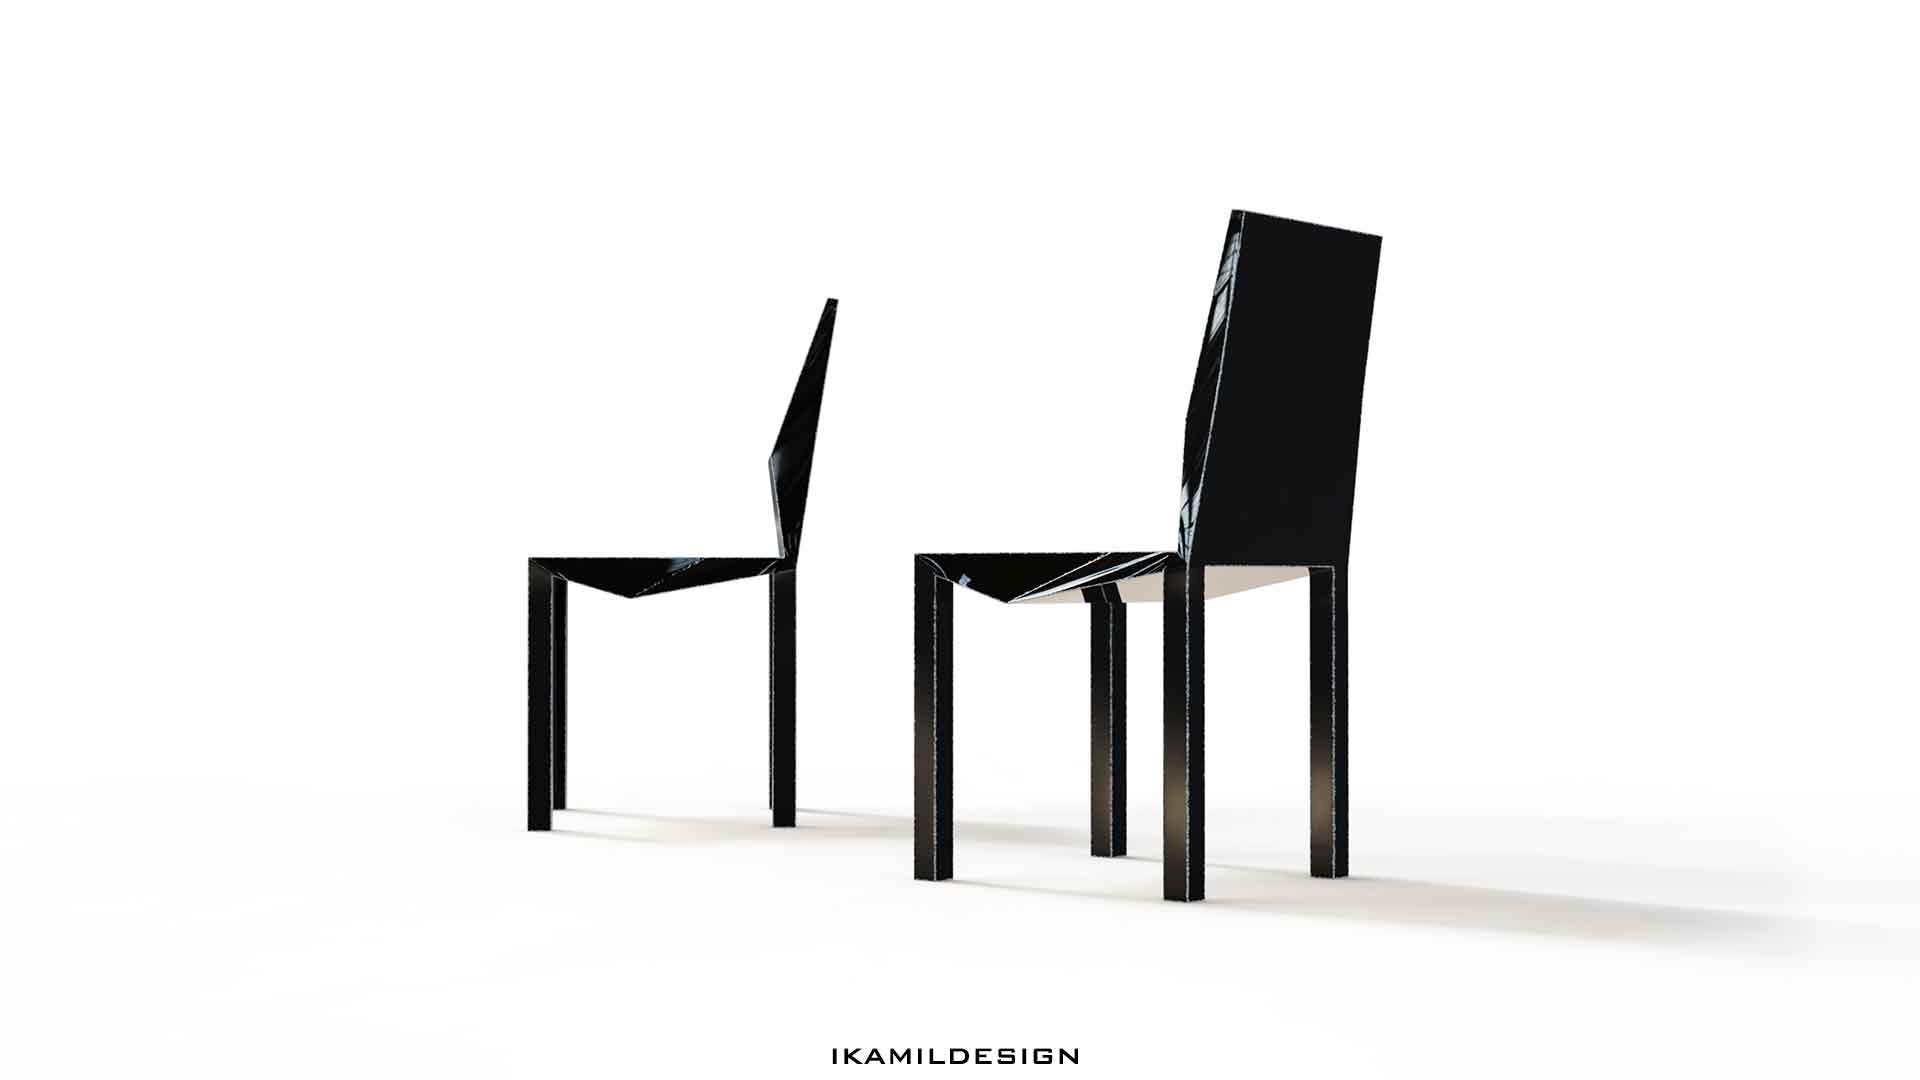 дизайнерская мебель, боковой вид на дизайнерский стул ерник, икамилдизайн